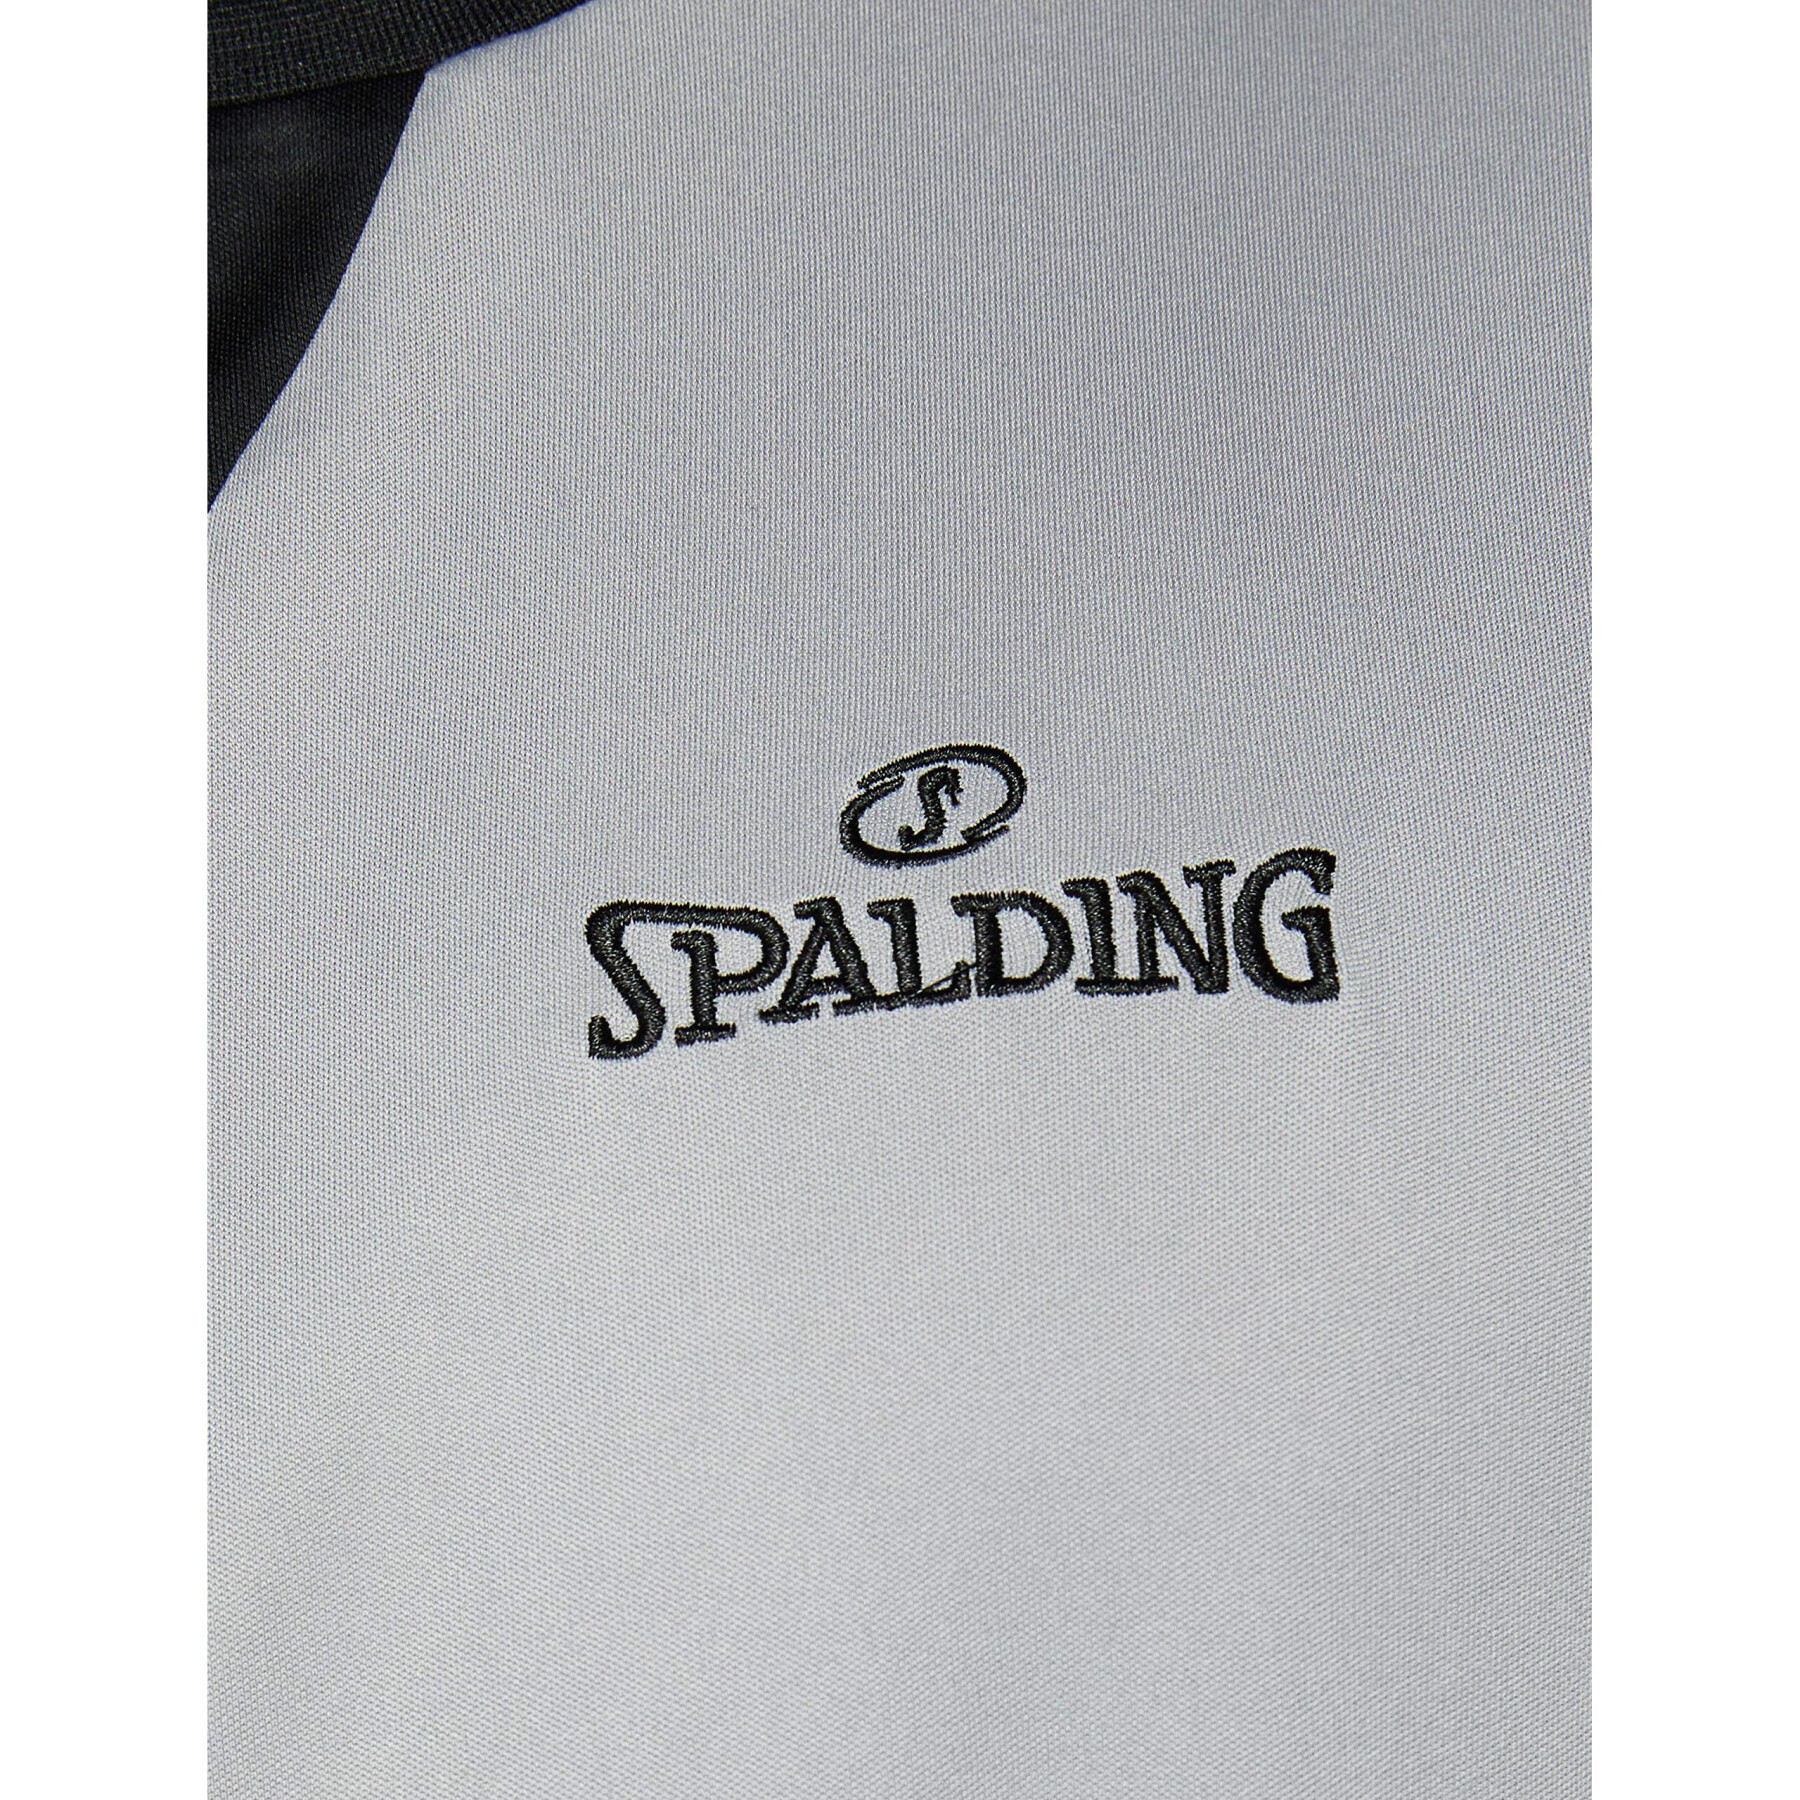 Scheidsrechtershirt Spalding Classic